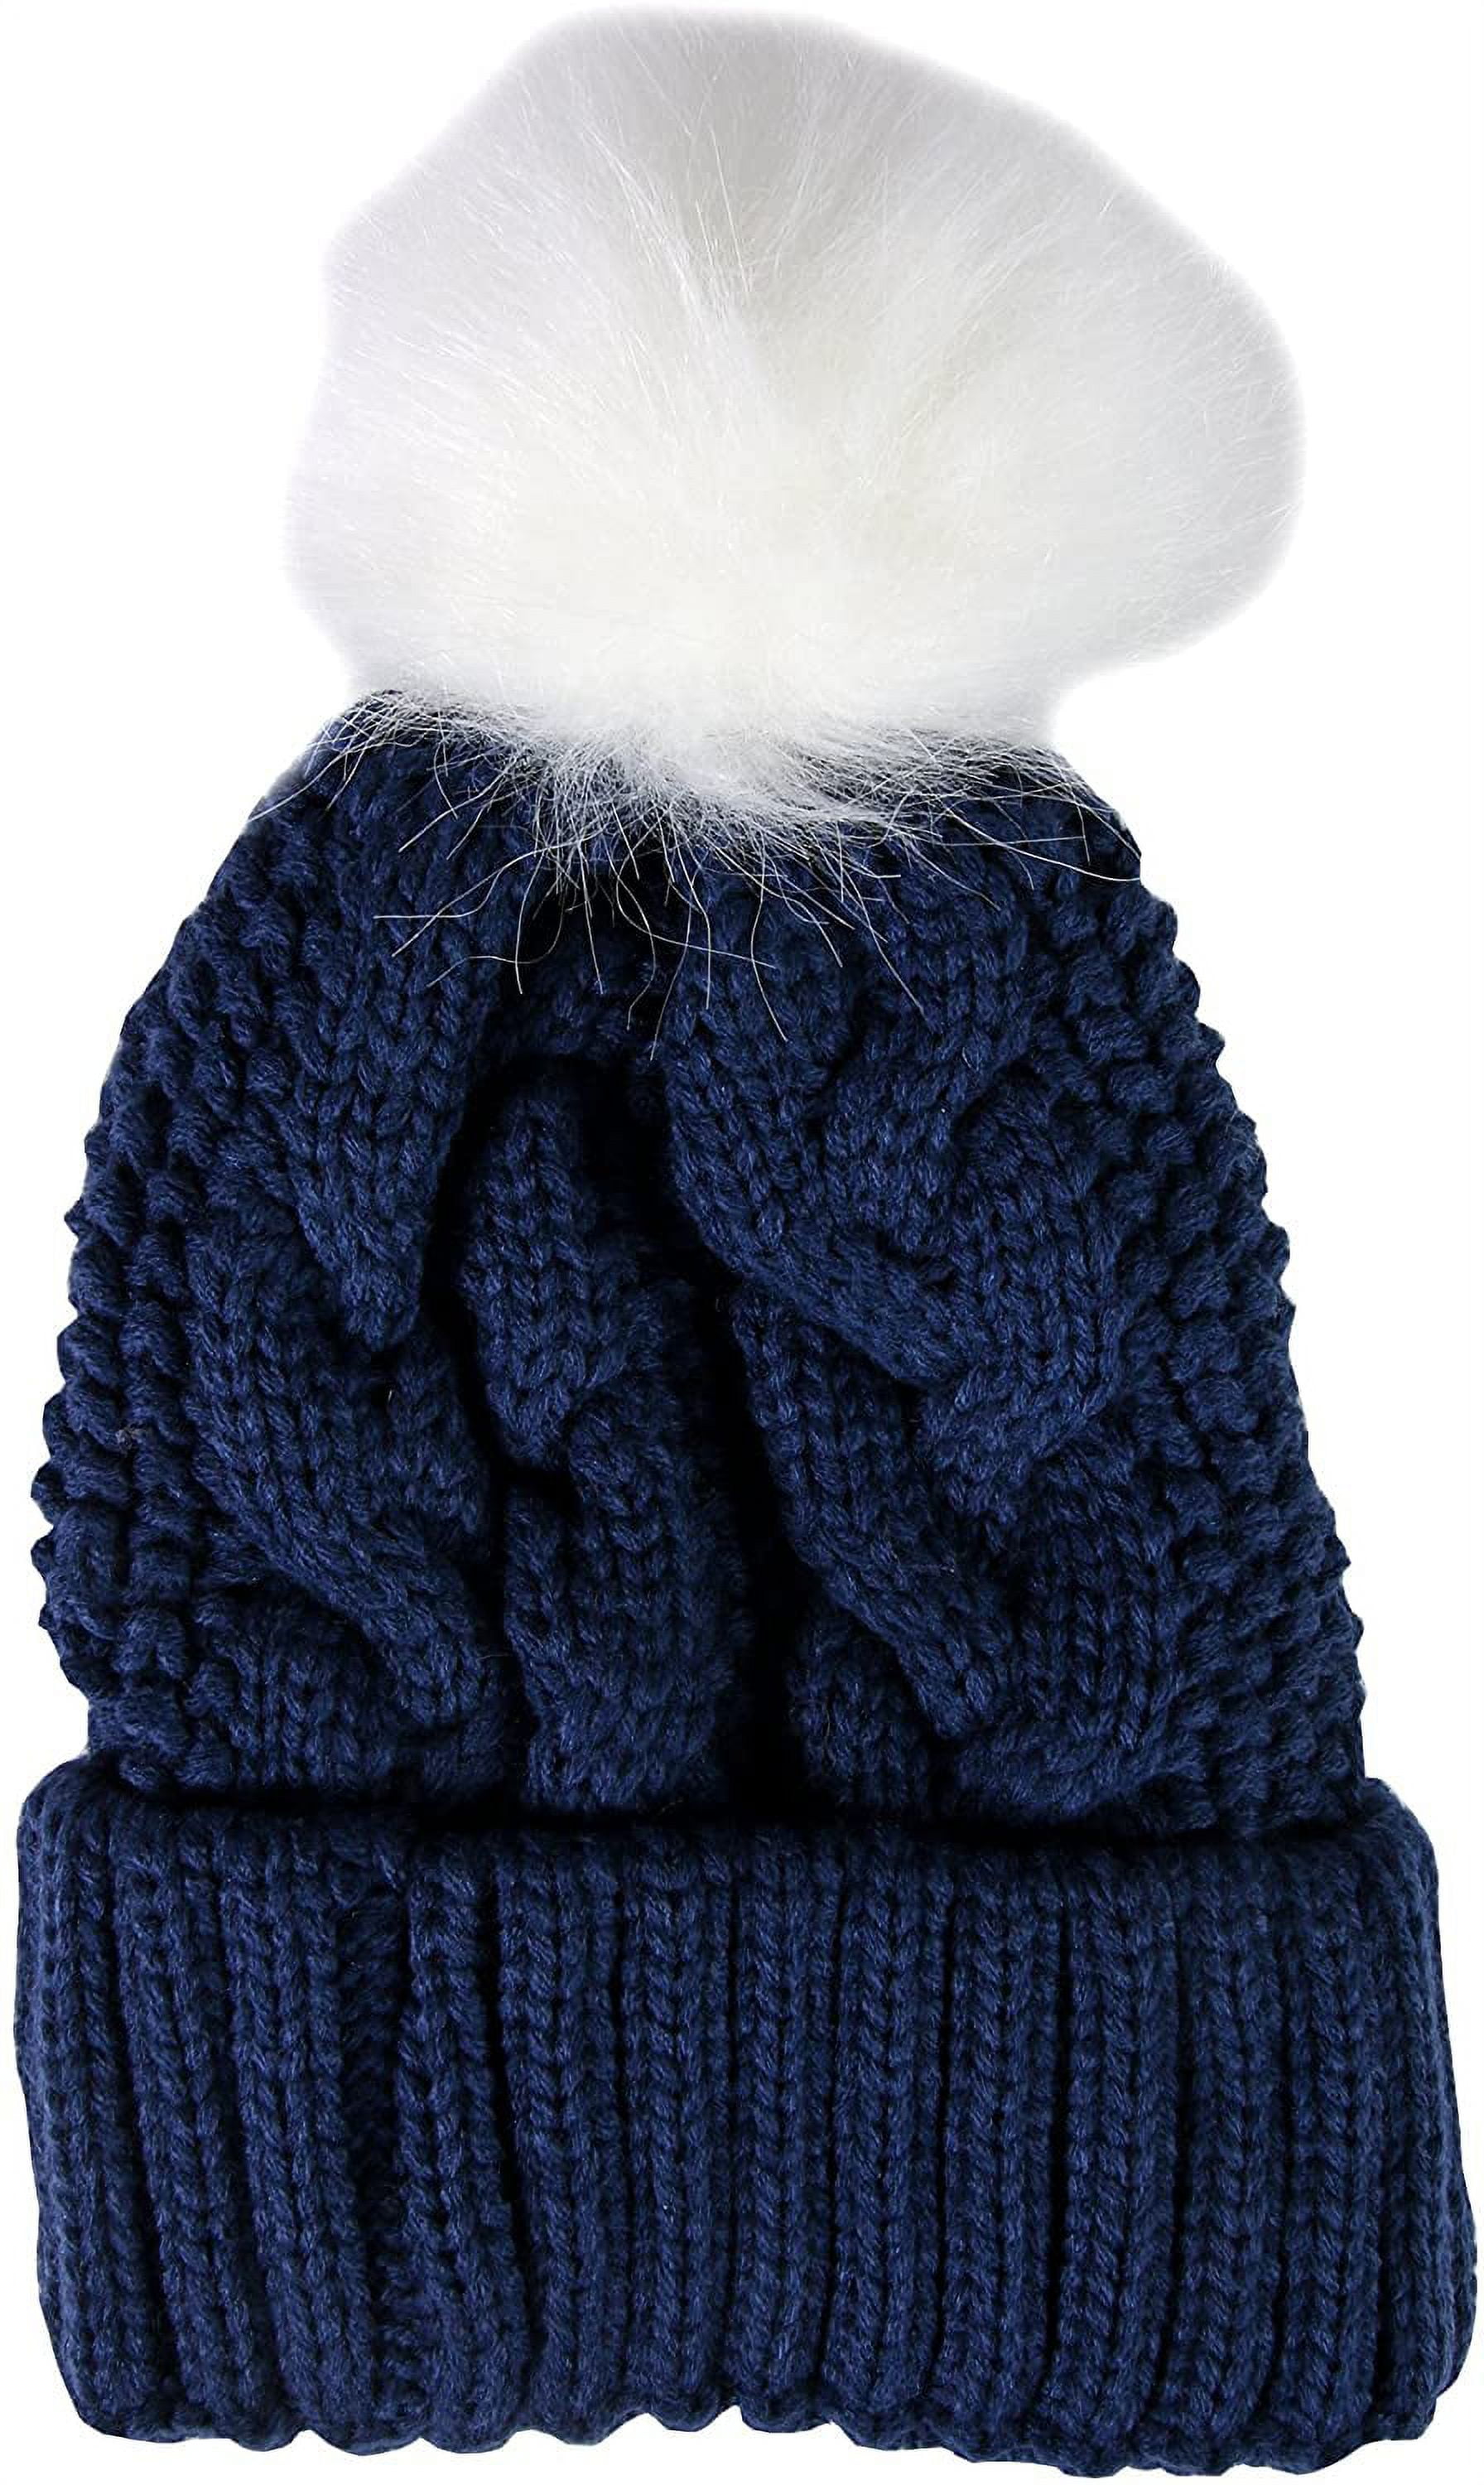 Mon gros bonnet au tricot parfait pour les hivers froids